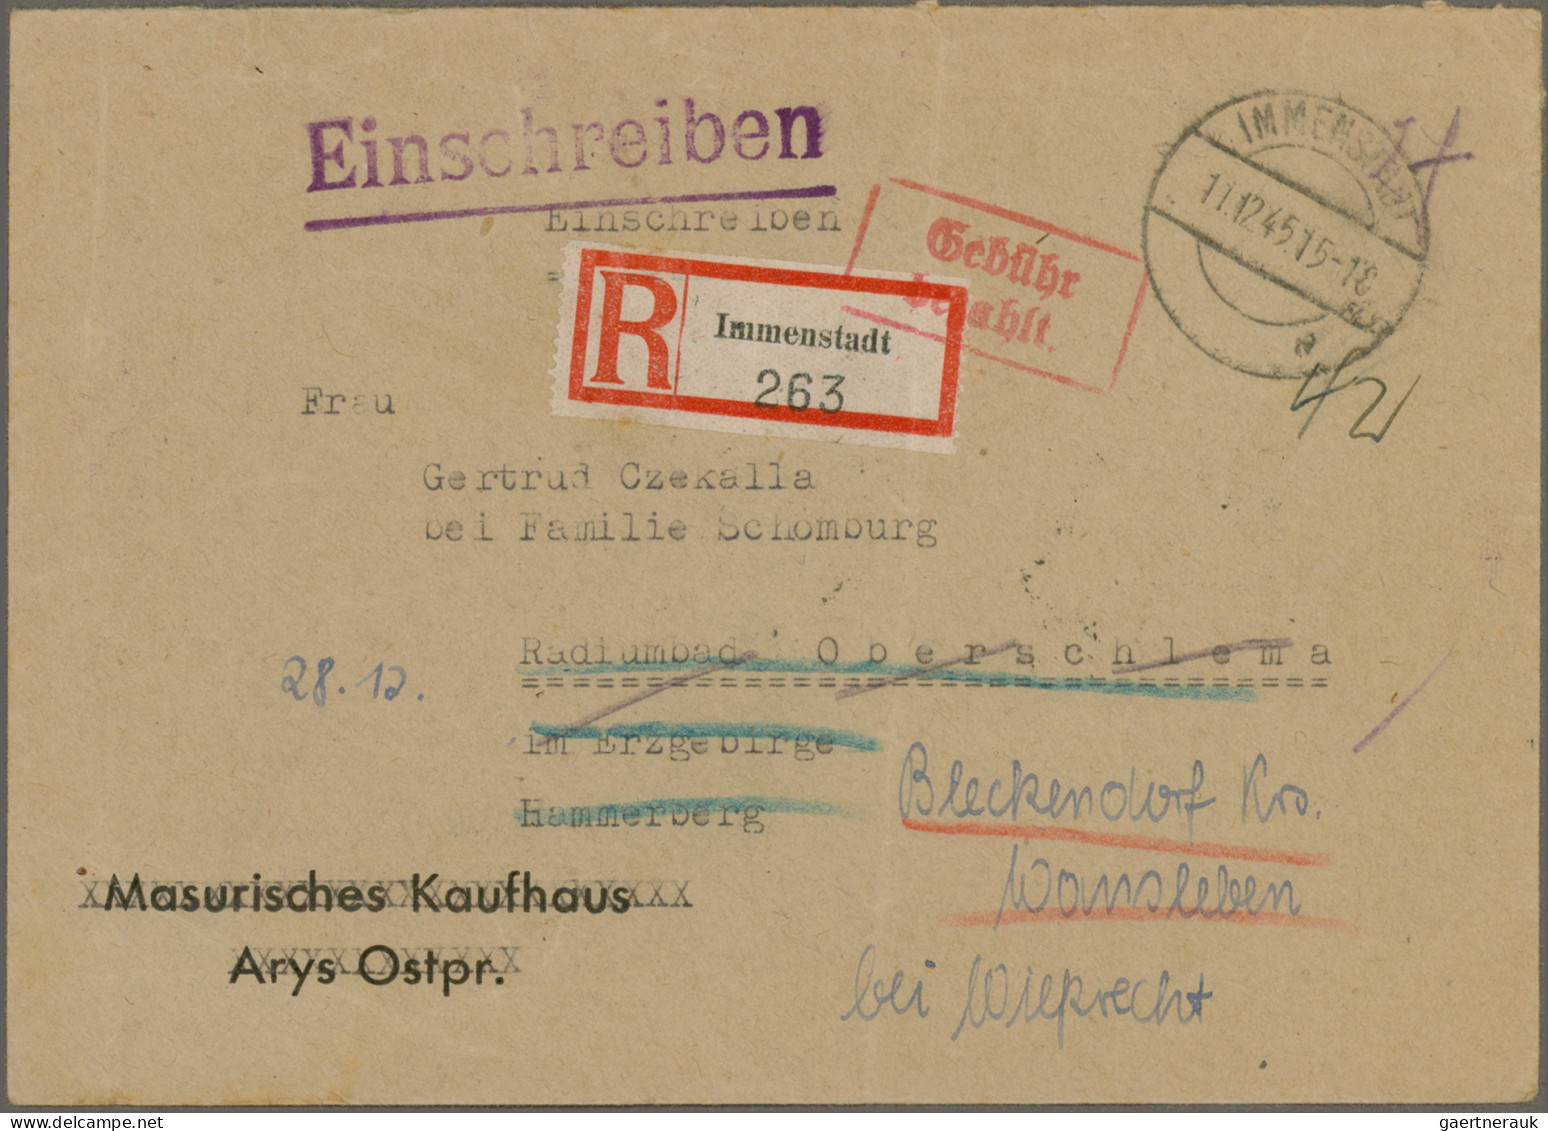 Alliierte Besetzung - Gebühr Bezahlt: 1945/1948, vielseitige Partie von ca. 83 G